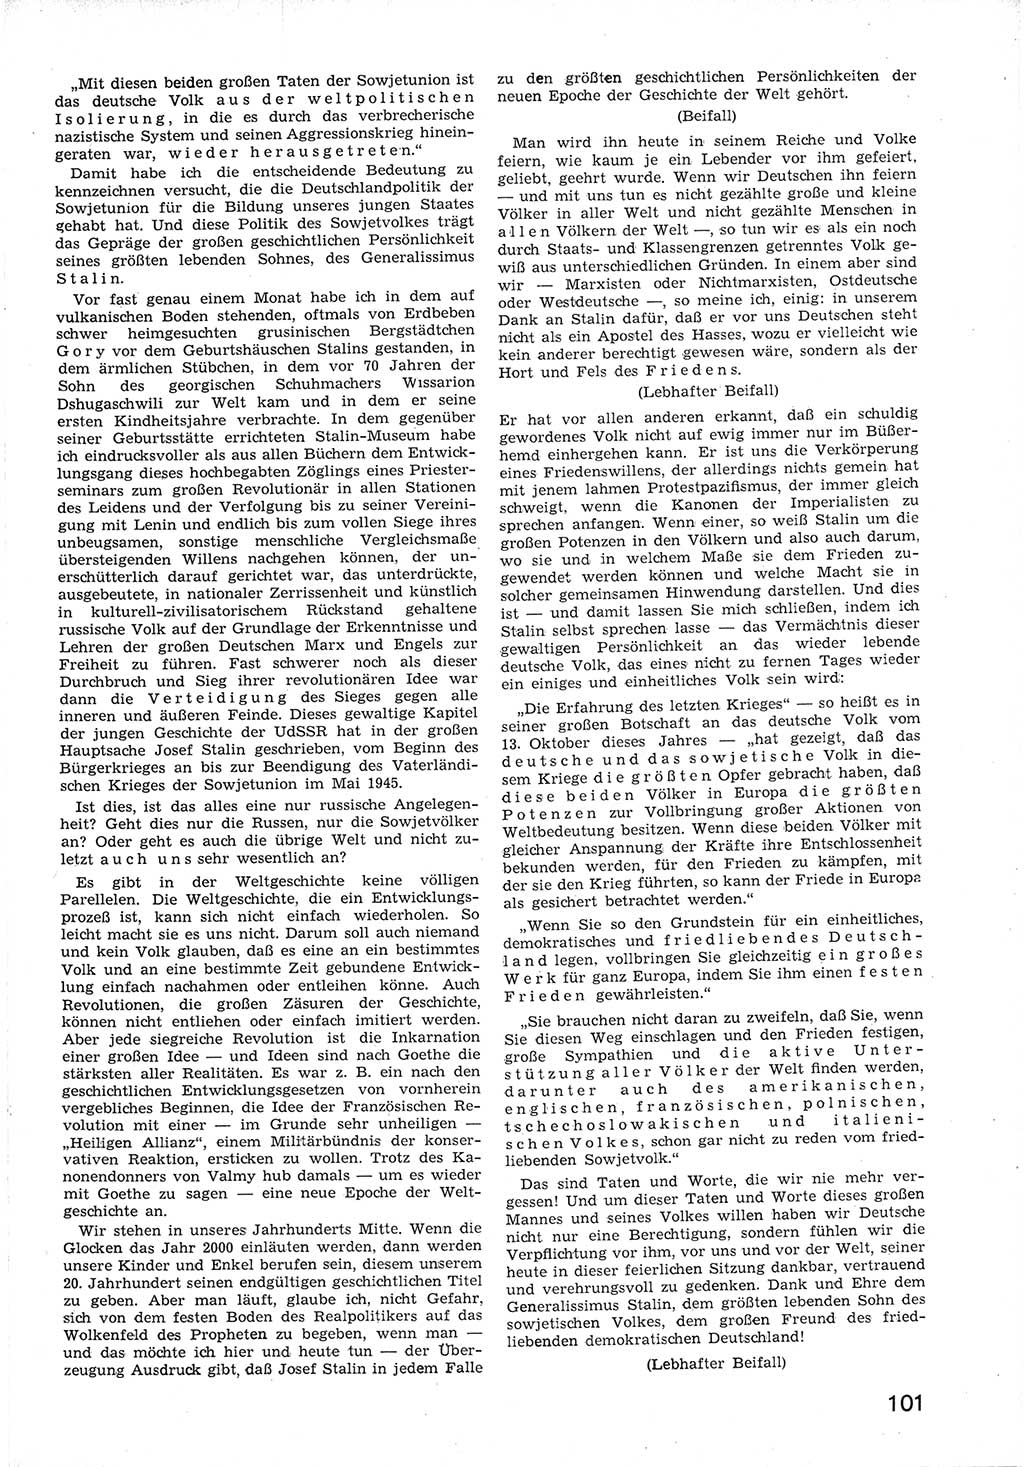 Provisorische Volkskammer (VK) der Deutschen Demokratischen Republik (DDR) 1949-1950, Dokument 113 (Prov. VK DDR 1949-1950, Dok. 113)